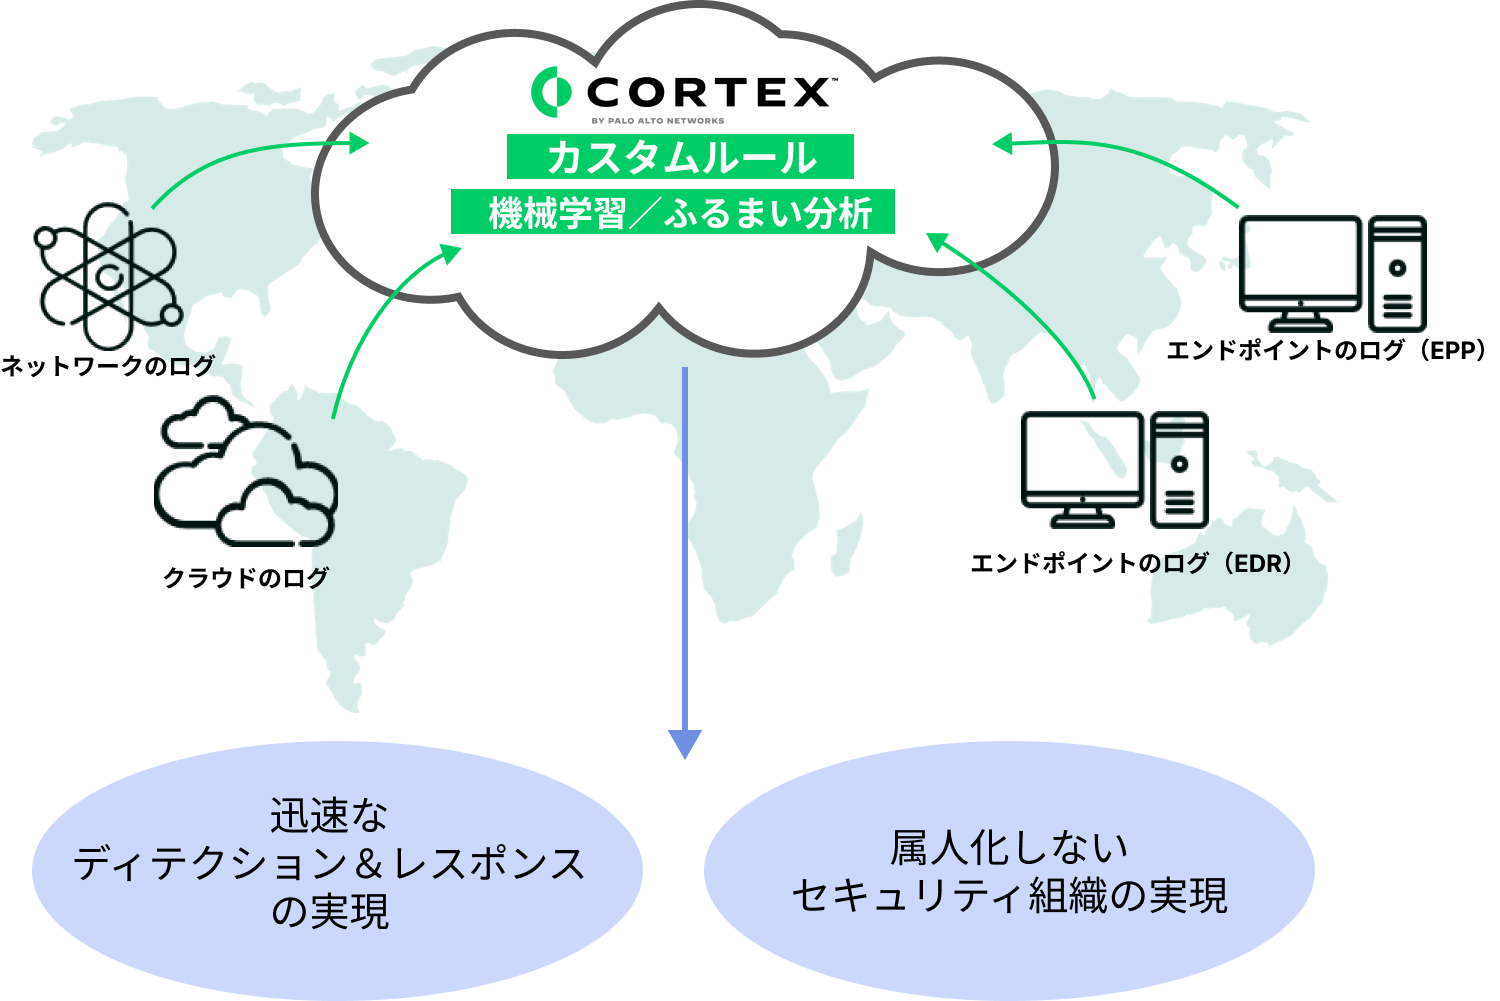 Cortex XDRは、エンドポイントだけではなく、クラウドとネットワークまでのログをシームレスに統合・可視化することが可能です。